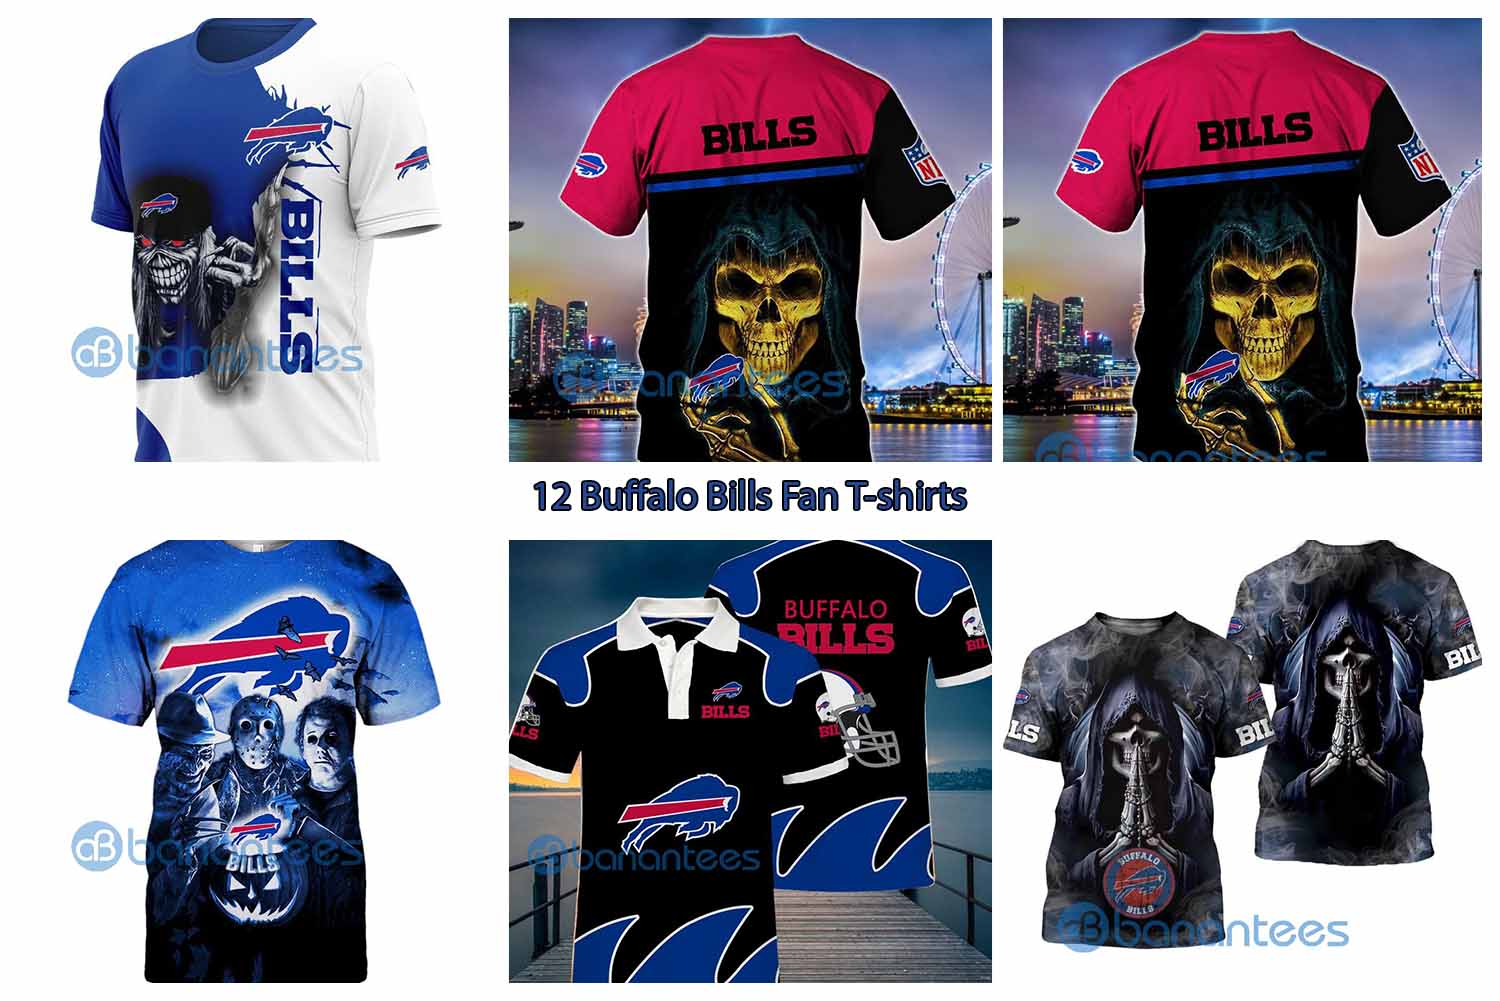 12 Buffalo Bills Fan T-shirts